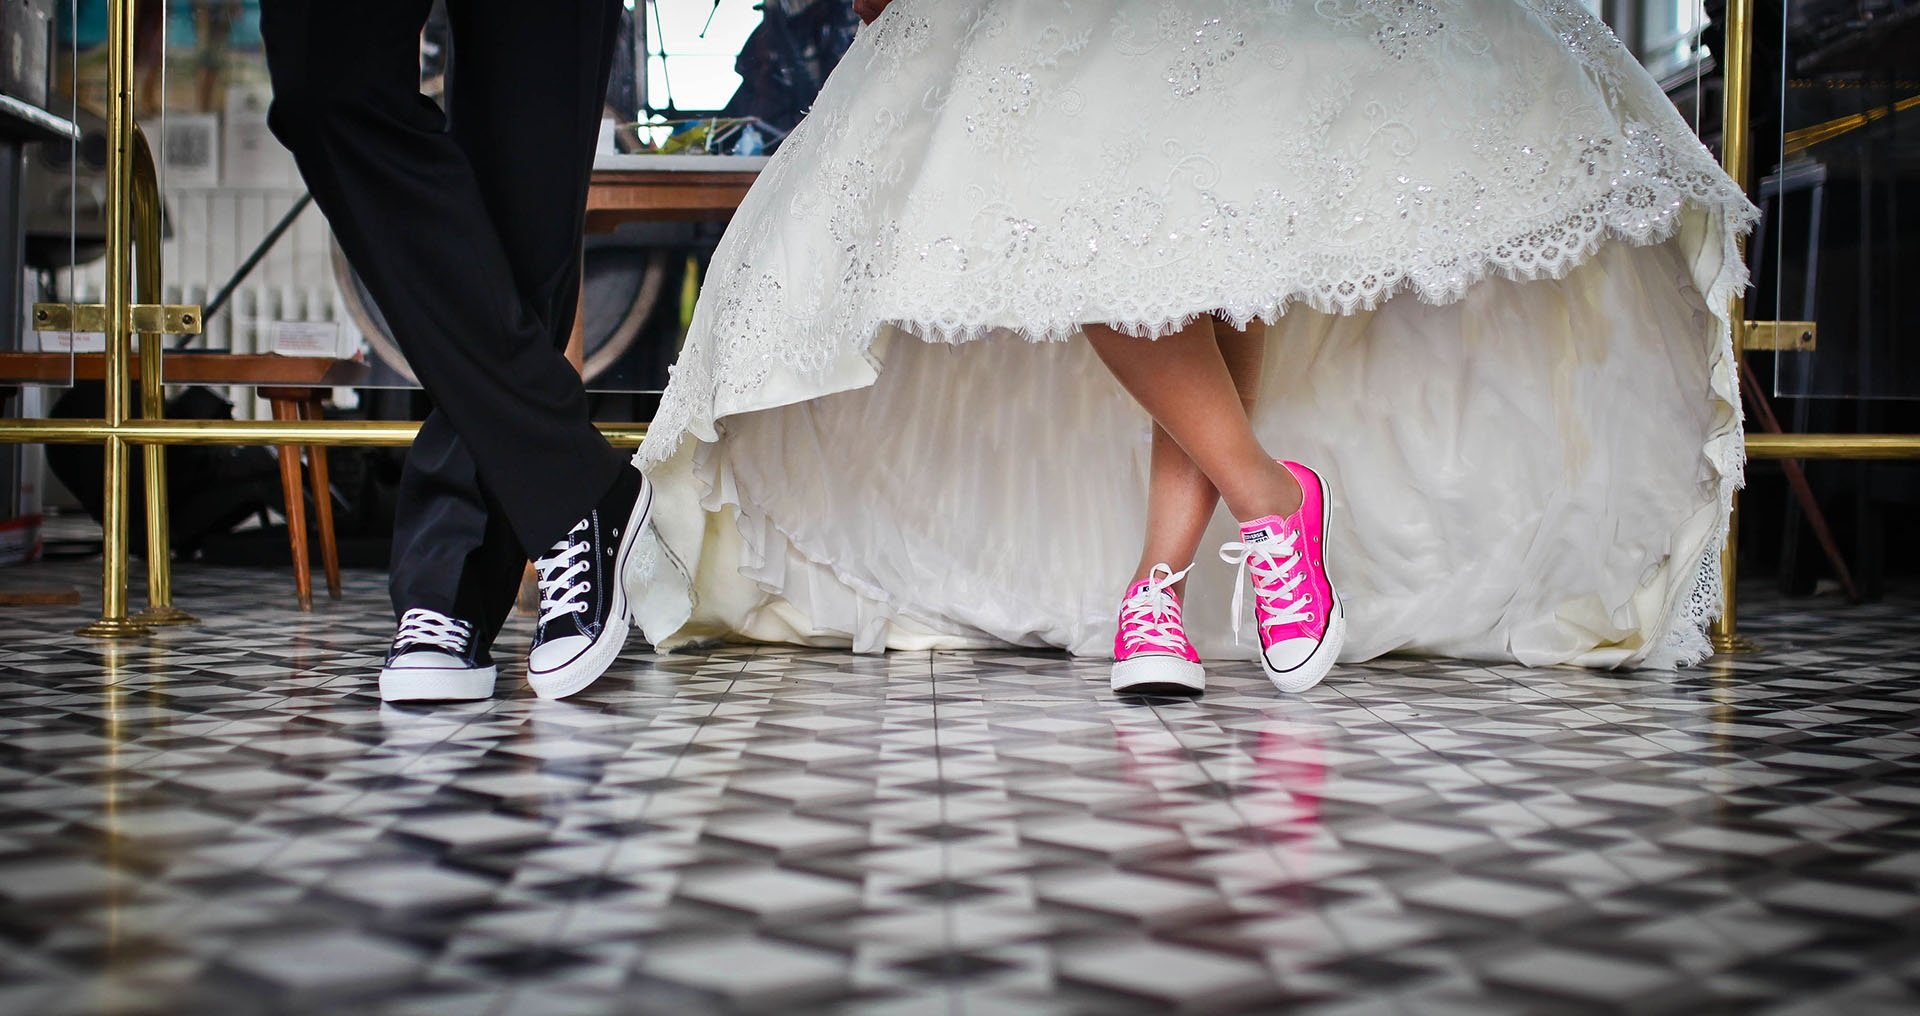 Pour faciliter l'organisation du mariage, de nombreuses applis gratuites sont aujourd'hui disponibles. © NGDPhotoworks, Pixabay